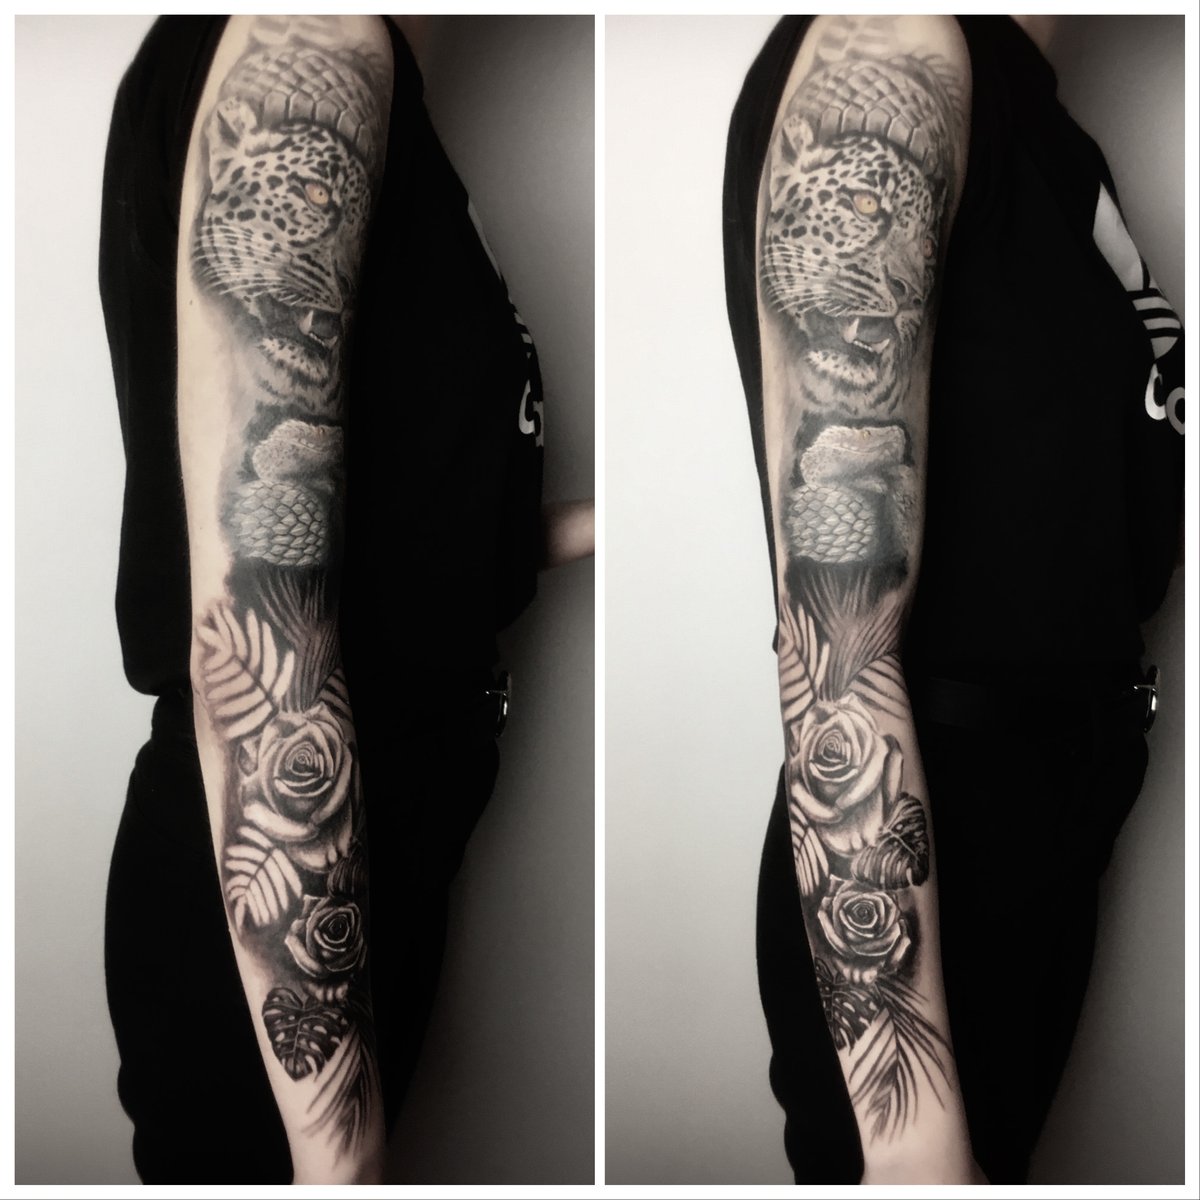 tatua-20027-marek-sadkowski-styl-realizm-tattooartist